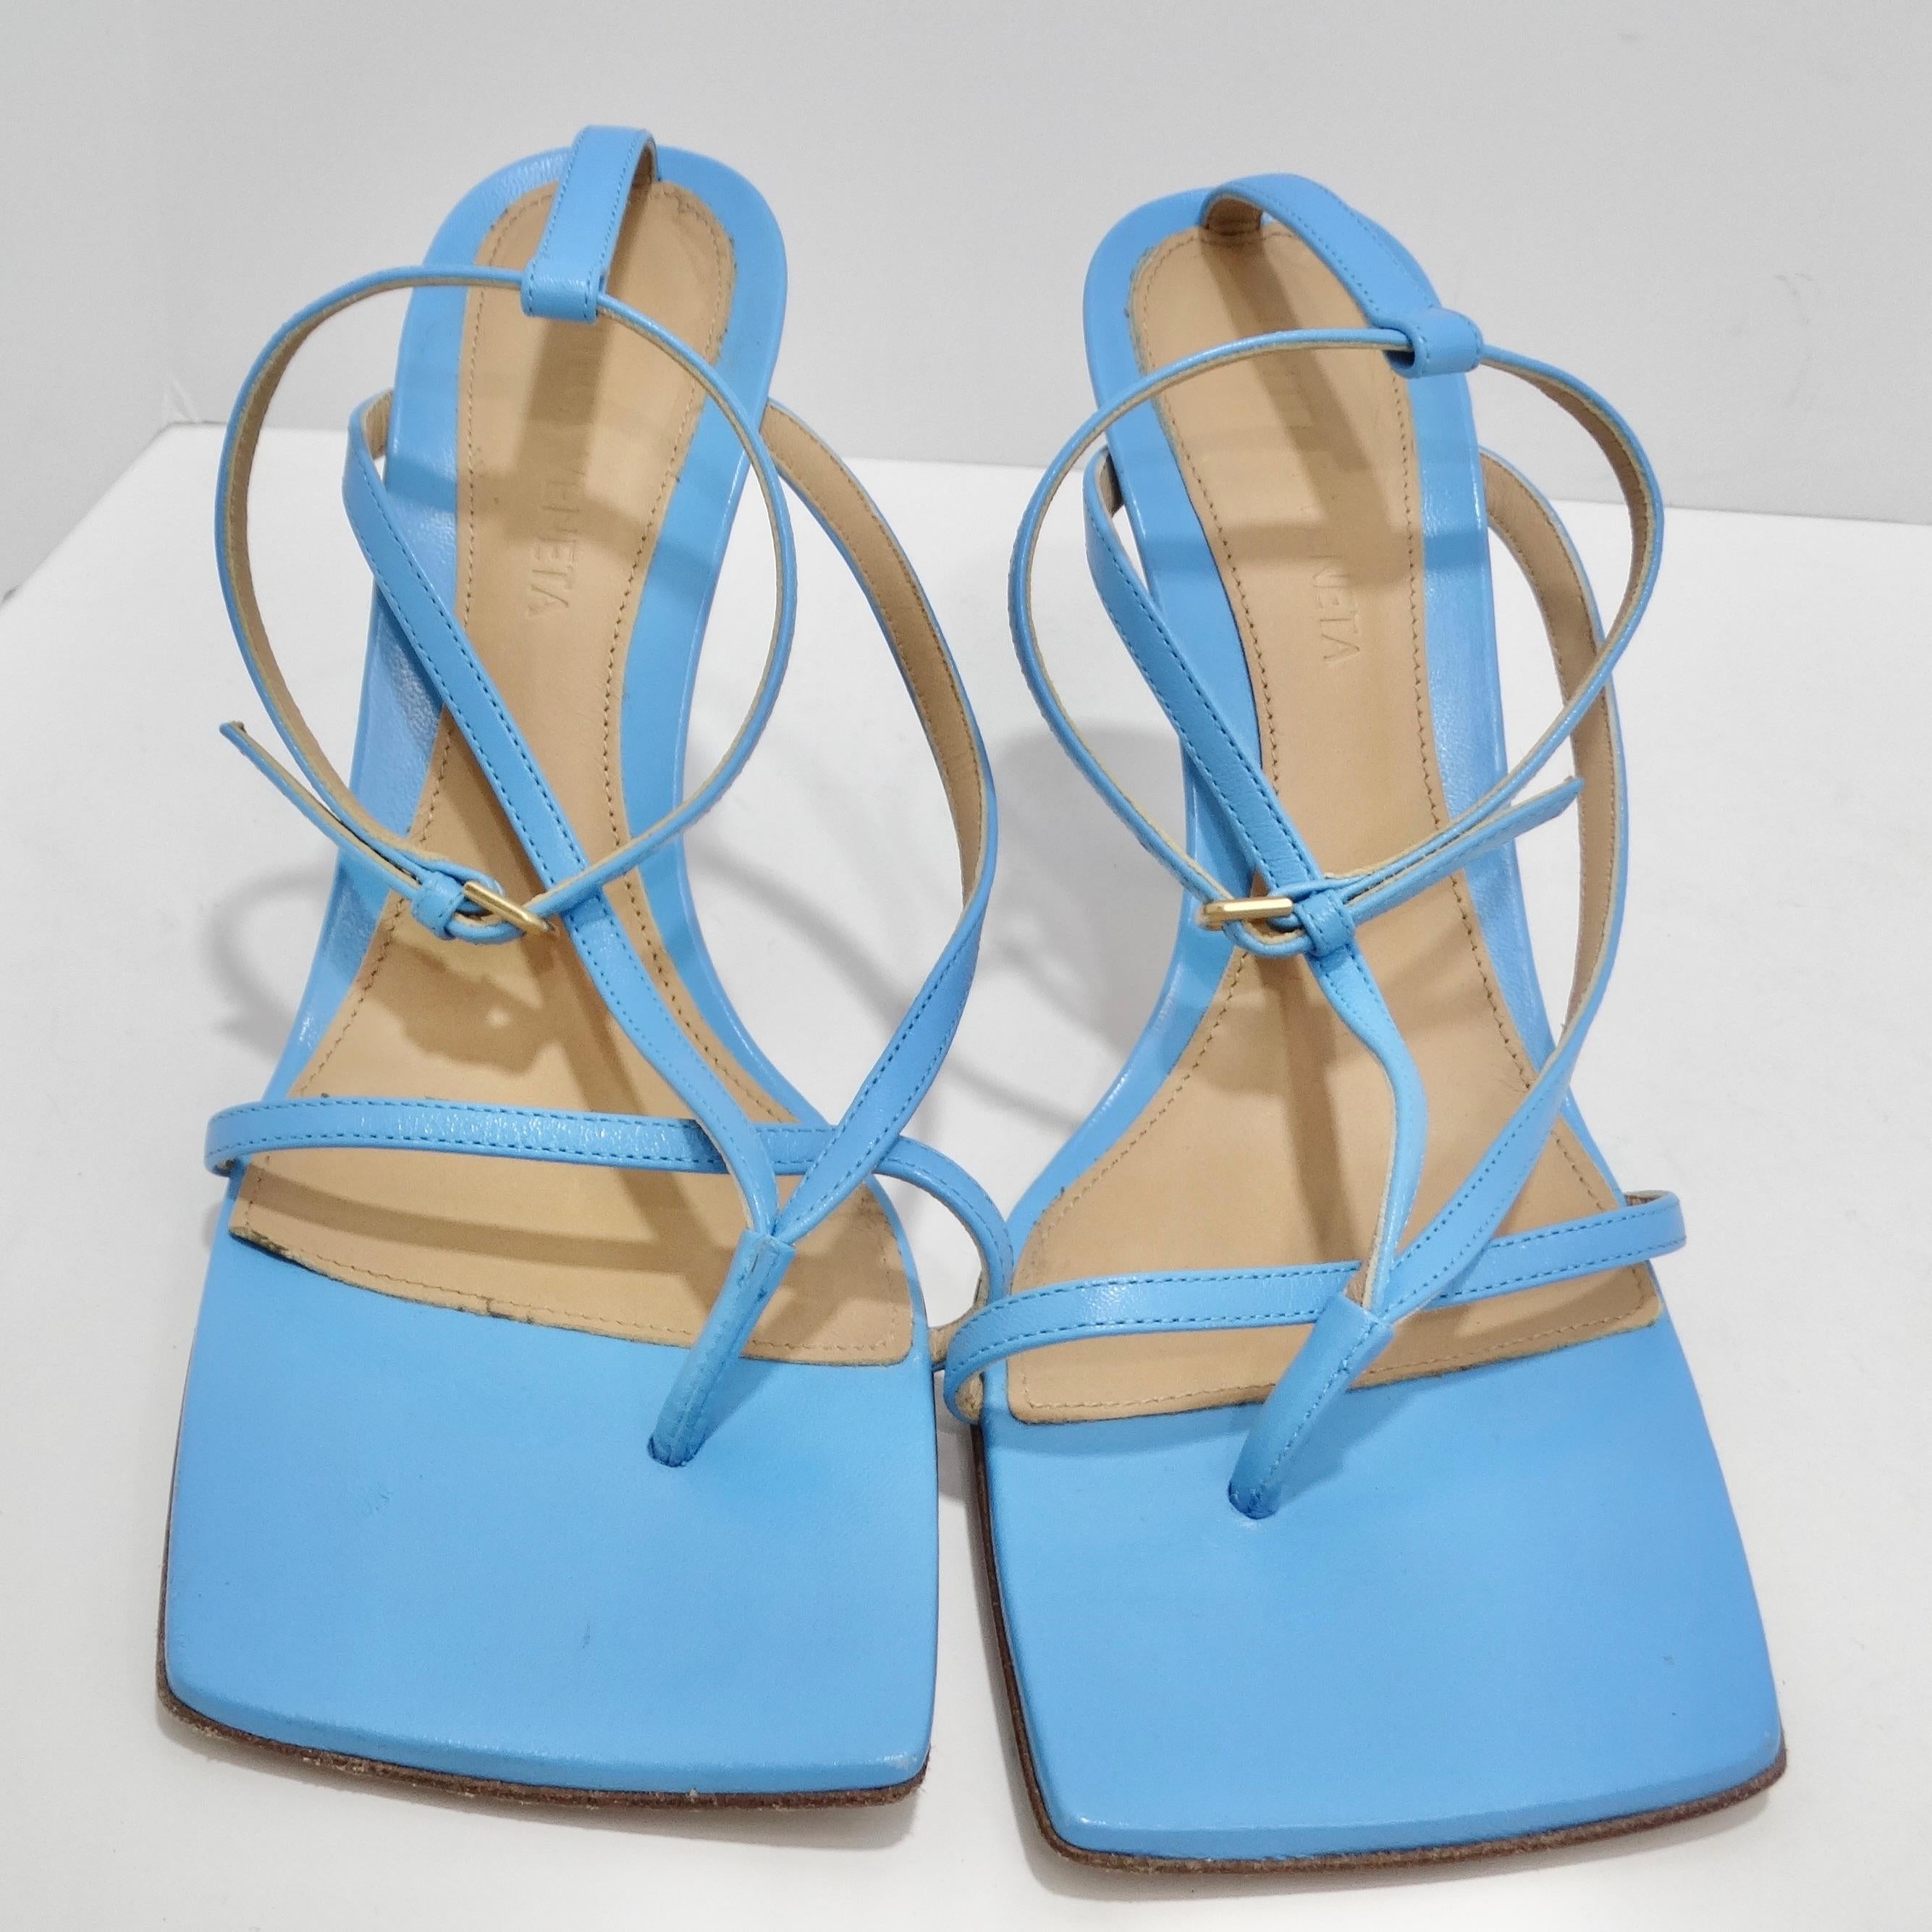 Élevez votre jeu de chaussures avec les sandales en cuir stretch à bout carré de Bottega Veneta, dans une superbe nuance de bleu ciel. Fabriquées avec précision et style, ces sandales sont une véritable incarnation de la philosophie de conception